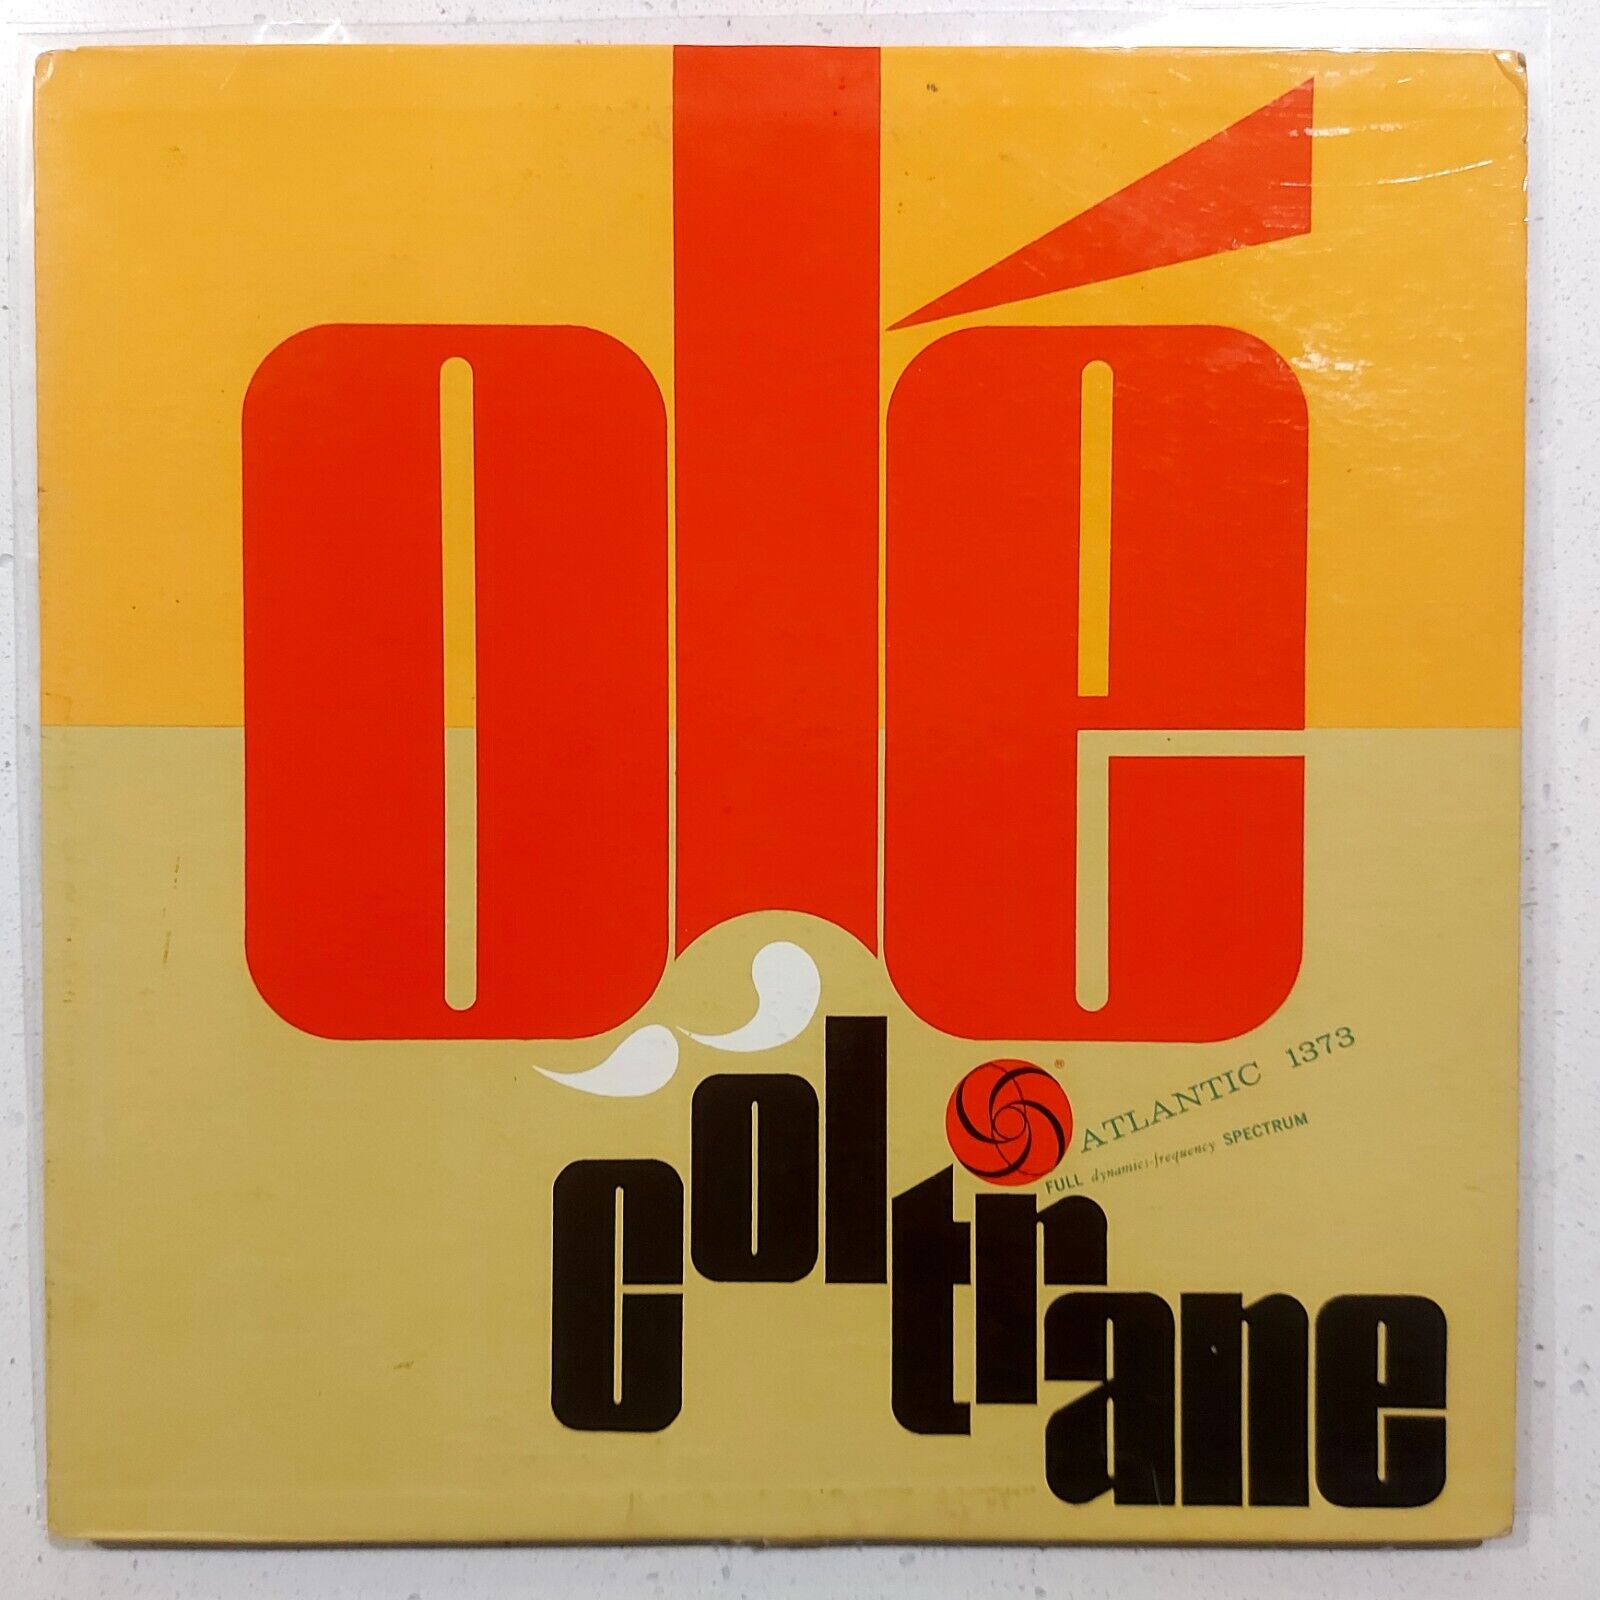 John Coltrane-Olé Coltrane LP Atlantic 1373 White Label Promo